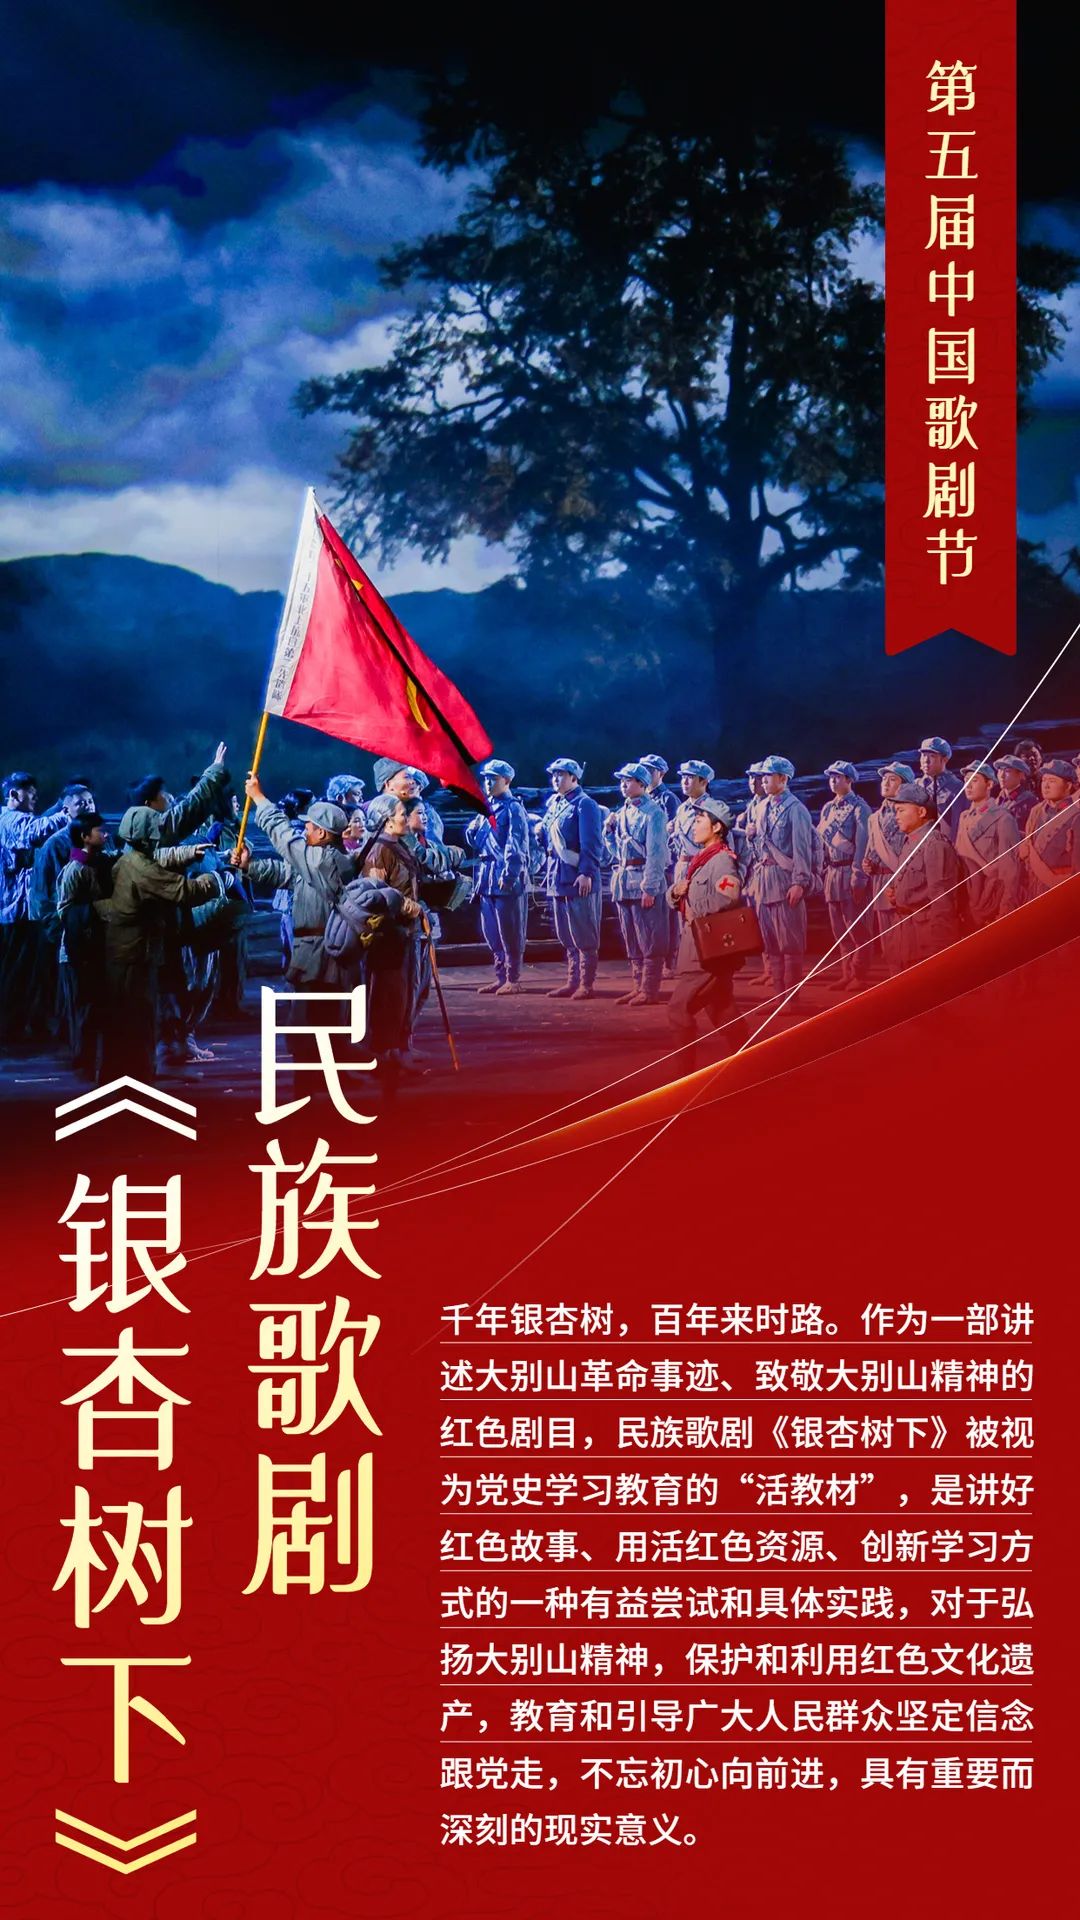 歌剧《银杏树下》荣获第五届中国歌剧节优秀剧目